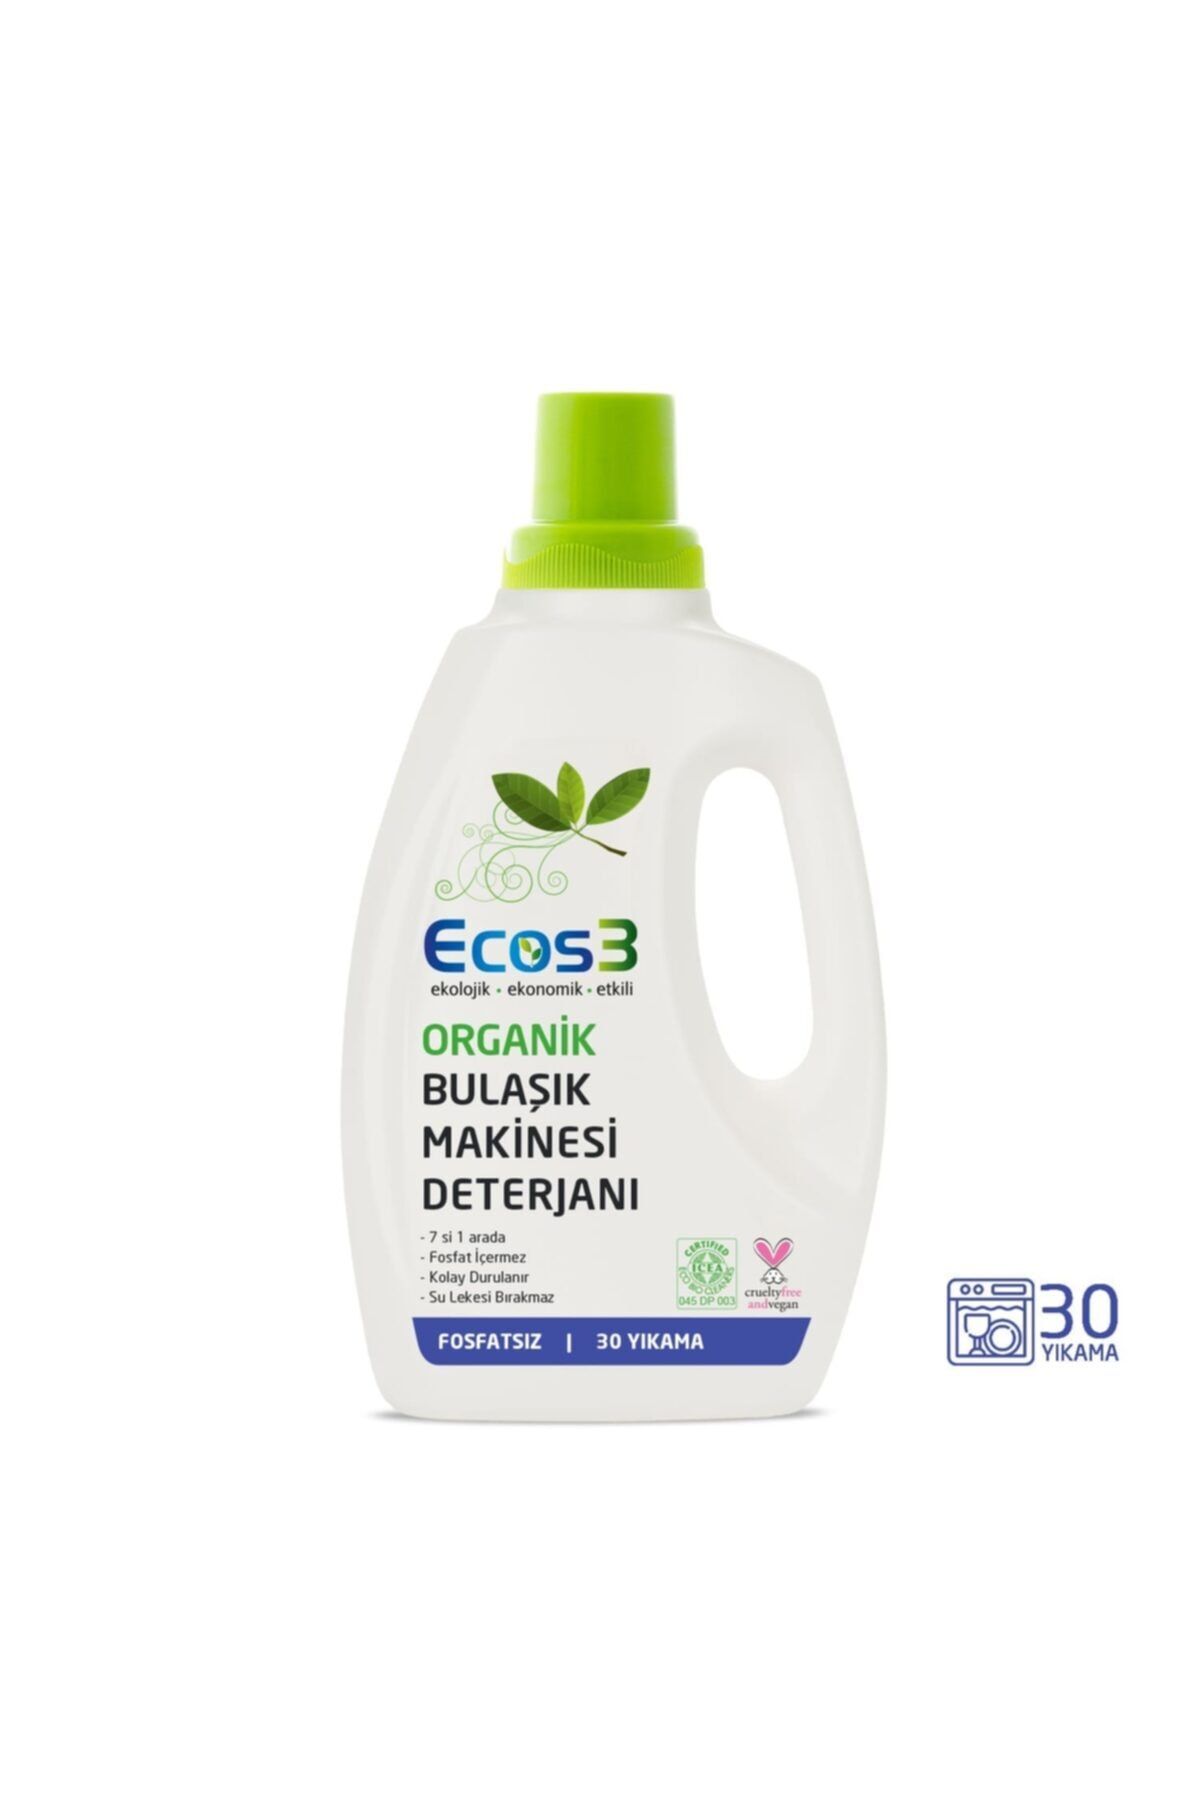 Ecos3 Organik Bulaşık Makinesi Jel Deterjan 750 ml